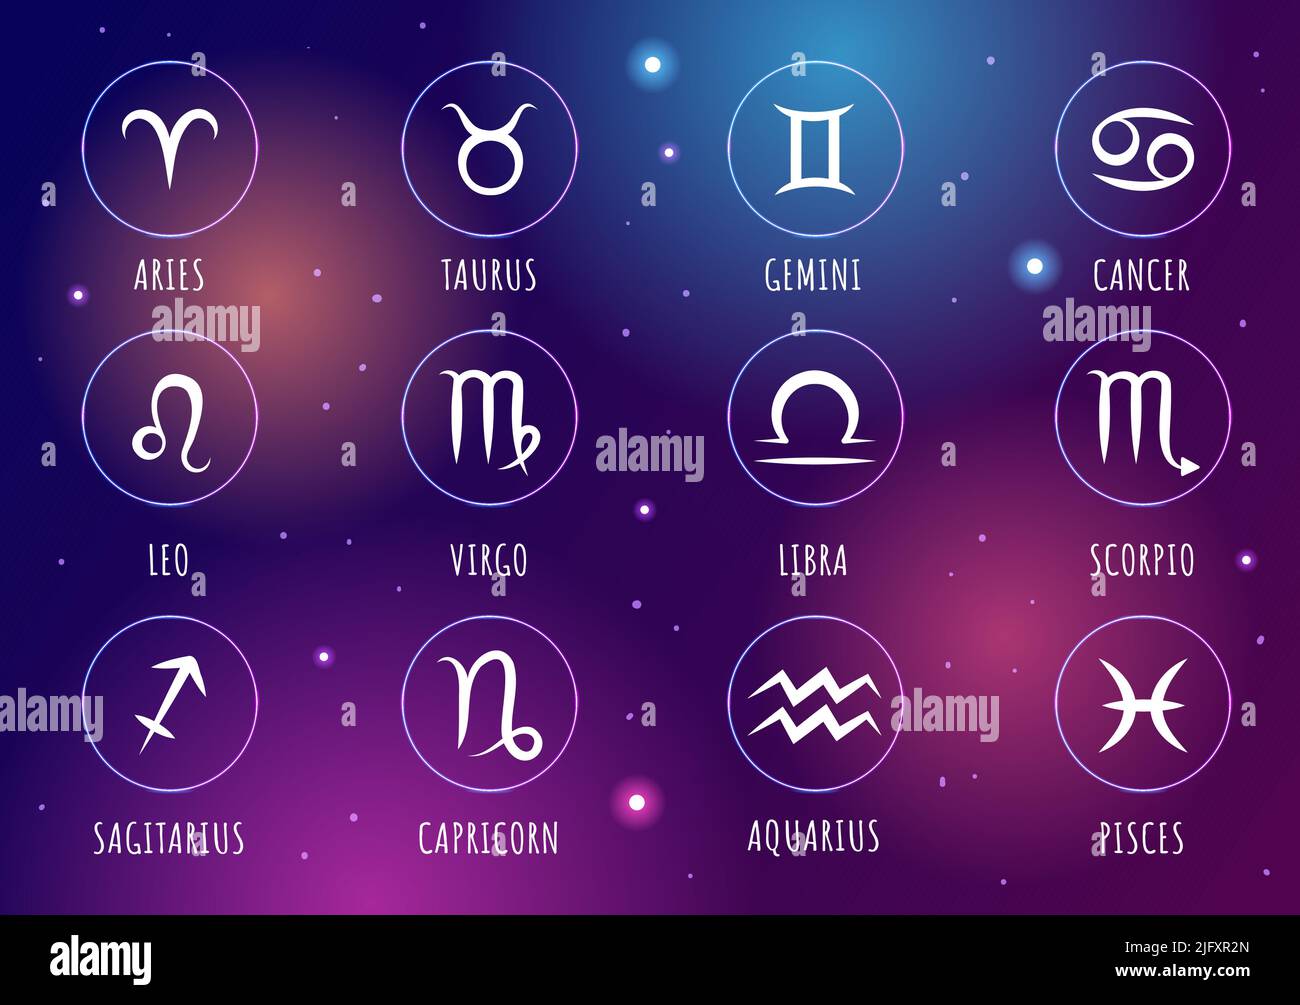 Roue du zodiaque signe astrologique avec symbole douze noms d'astrologie, horoscopes ou constellations dans l'illustration du vecteur de personnage de dessin animé plat Illustration de Vecteur